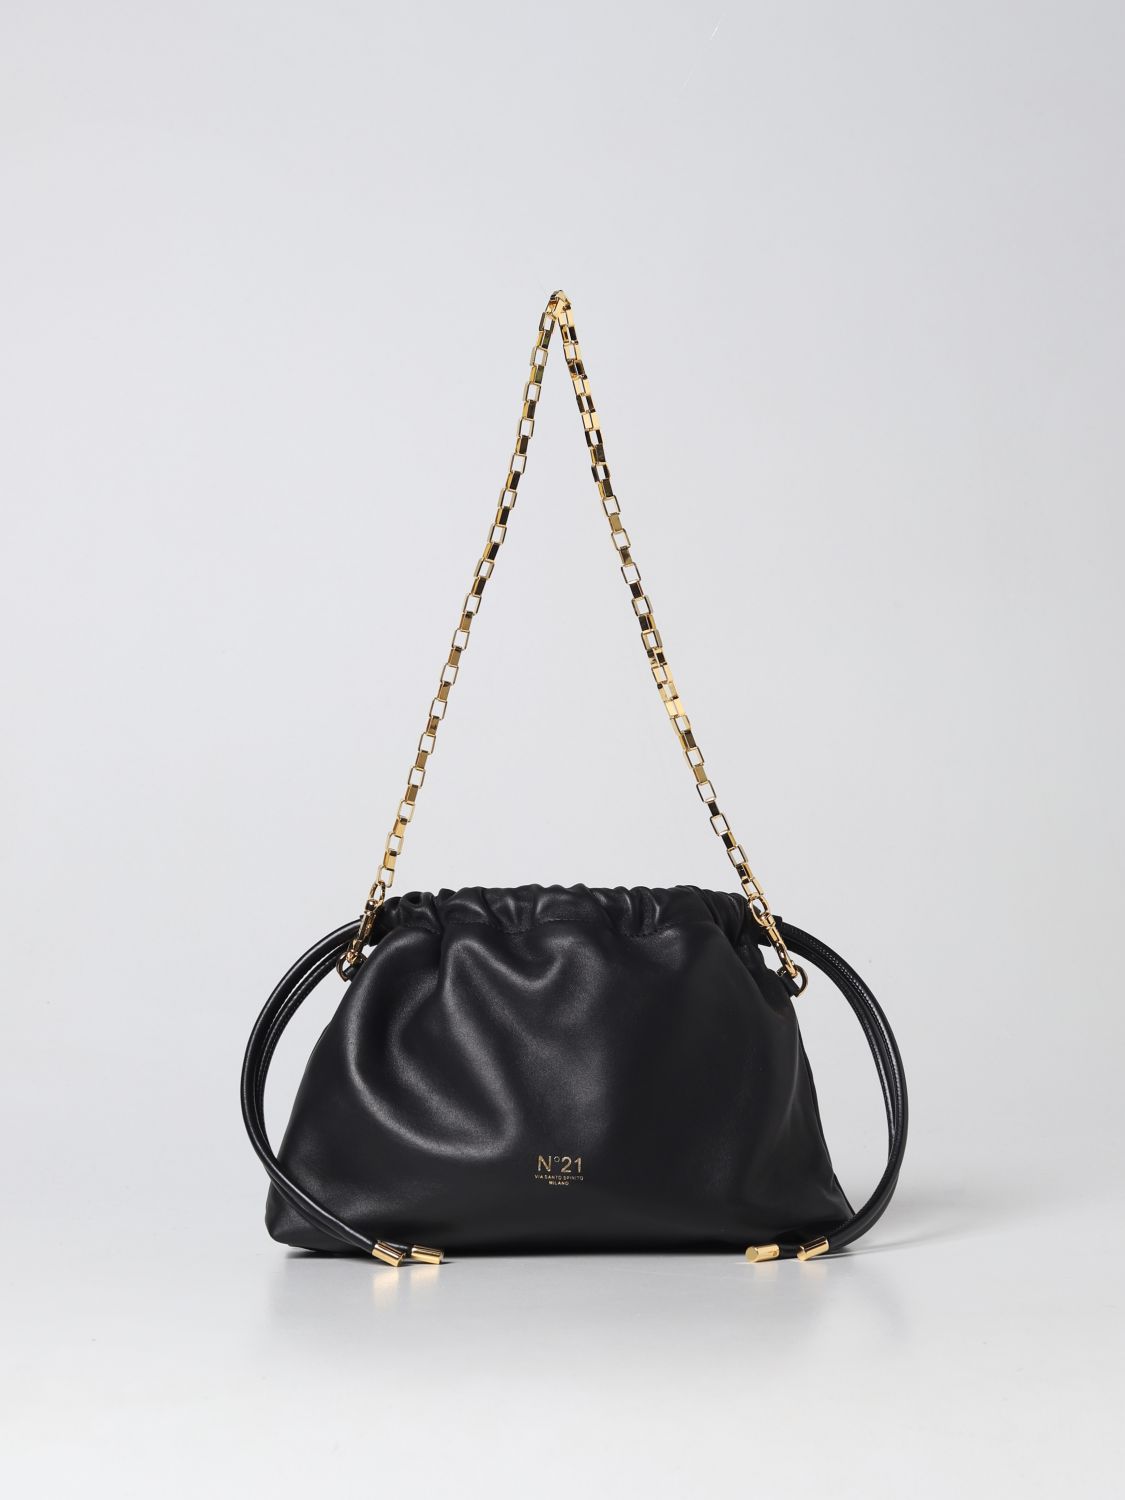 N°21 Handbag N° 21 Woman In Black